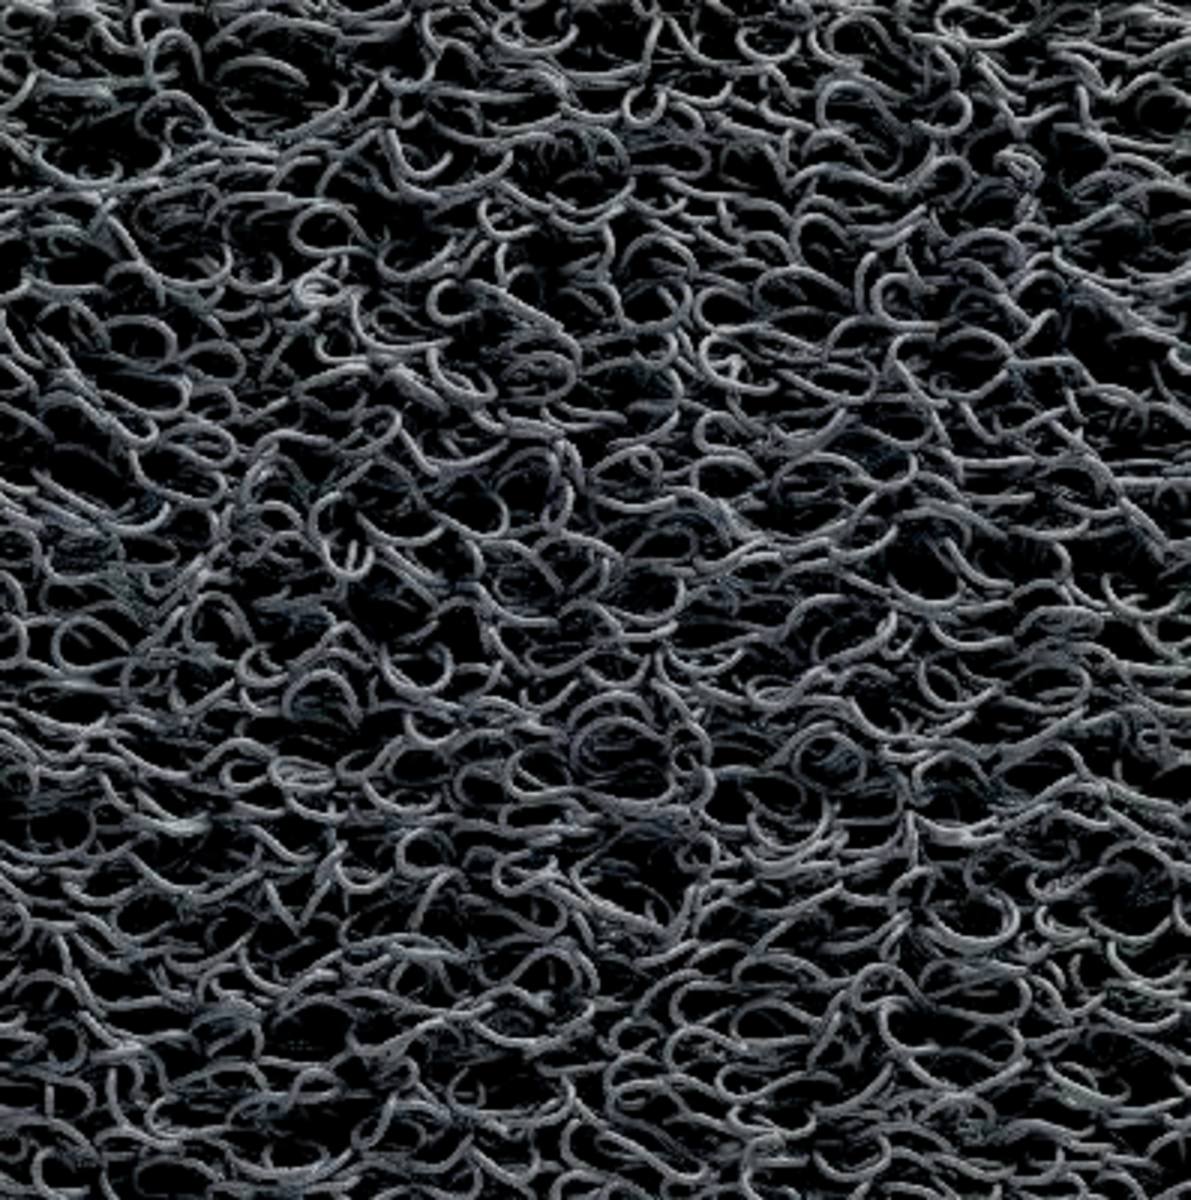 3M Tapis de propreté Nomad Terra 8100, noir, 6m x 1,22m